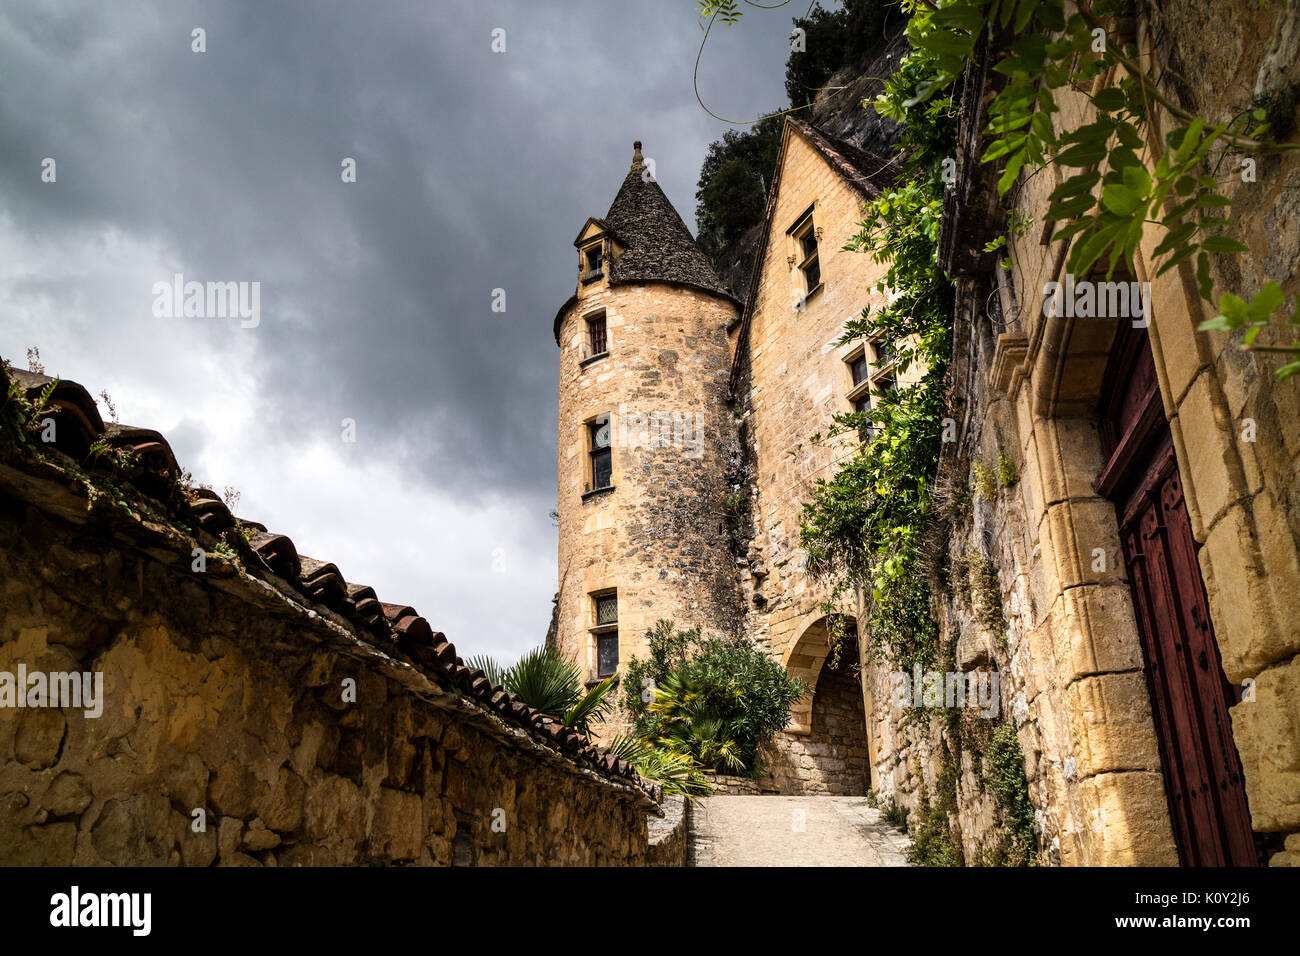 Im 15. Jahrhundert im Stil der Renaissance Manoir de Tarde im Dorf La Roque-Gageac, vor einem dramatischen stürmischen Himmel, Dordogne, Frankreich, Europa Stockfoto